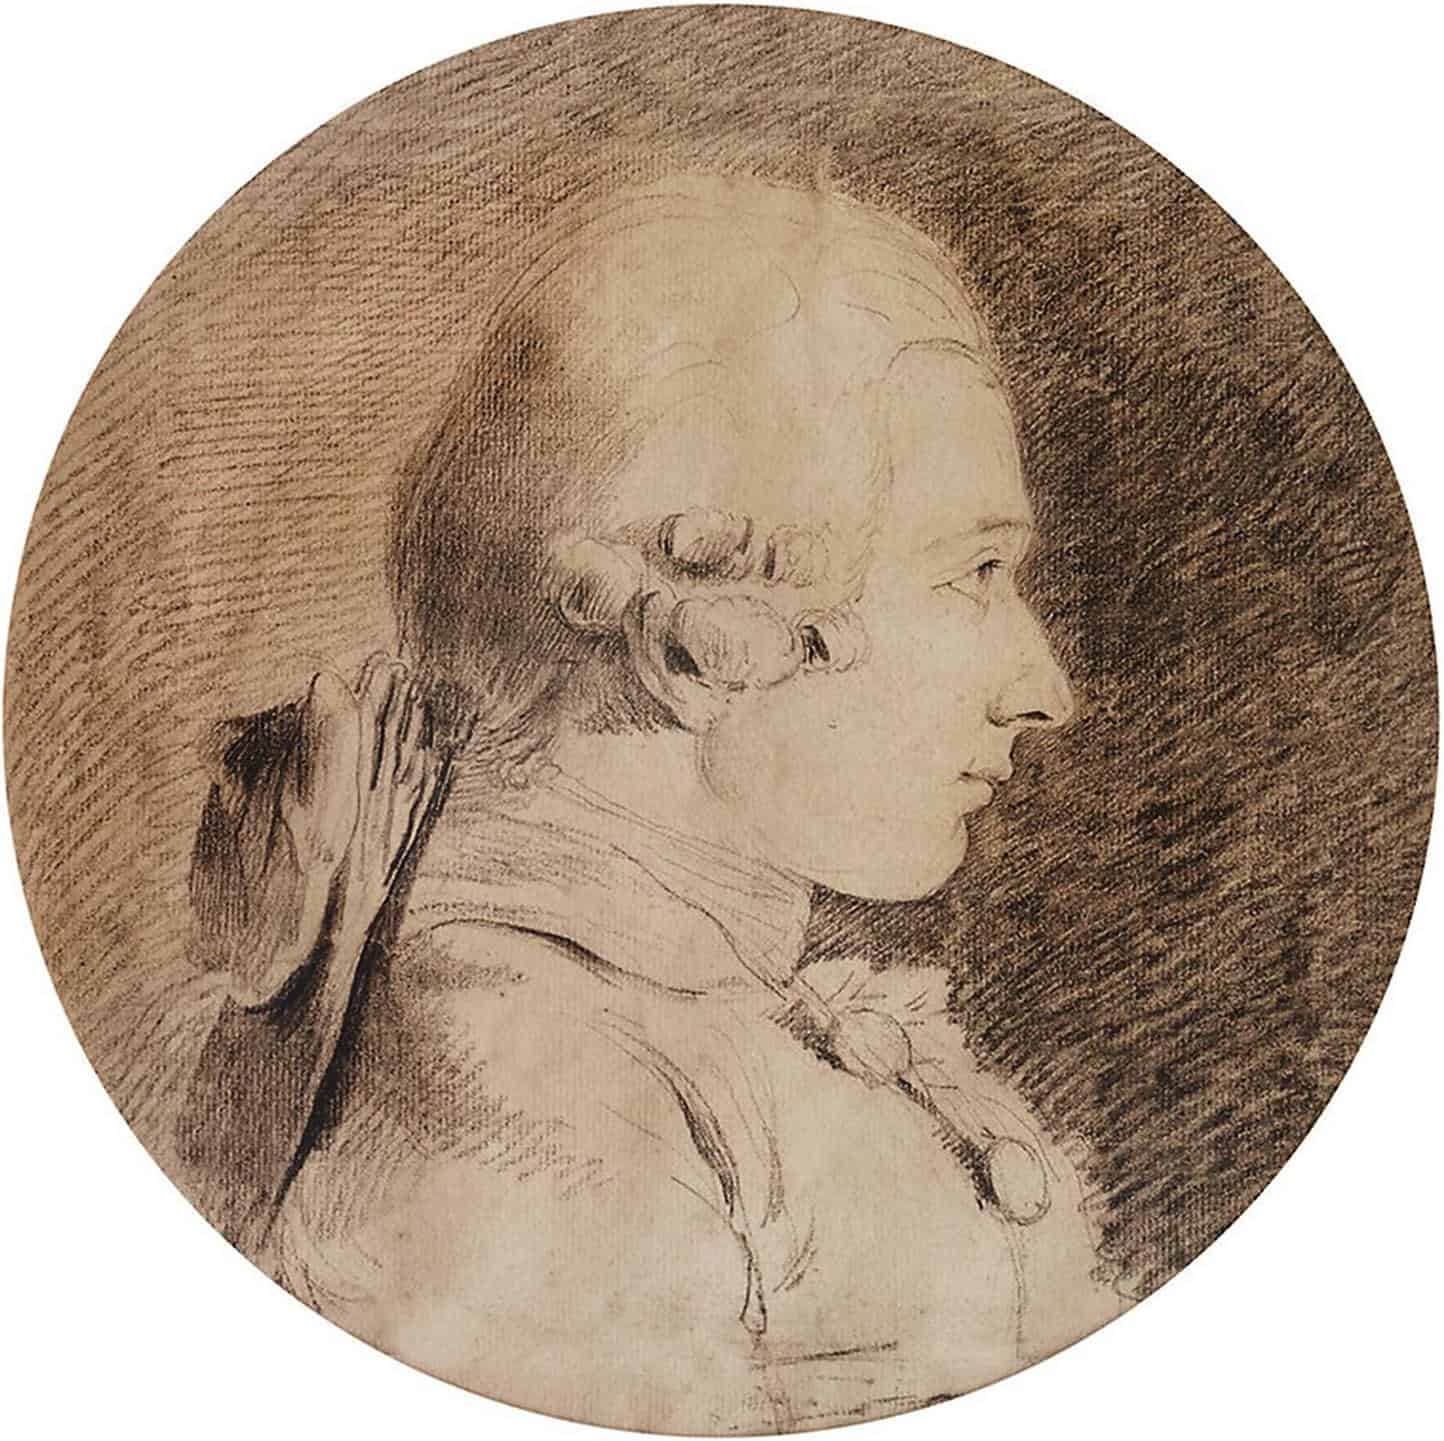 Profil supposé du marquis Donatien Alphonse François de Sade à 20 ans, par Charles van Loo (vers 1760-1762)